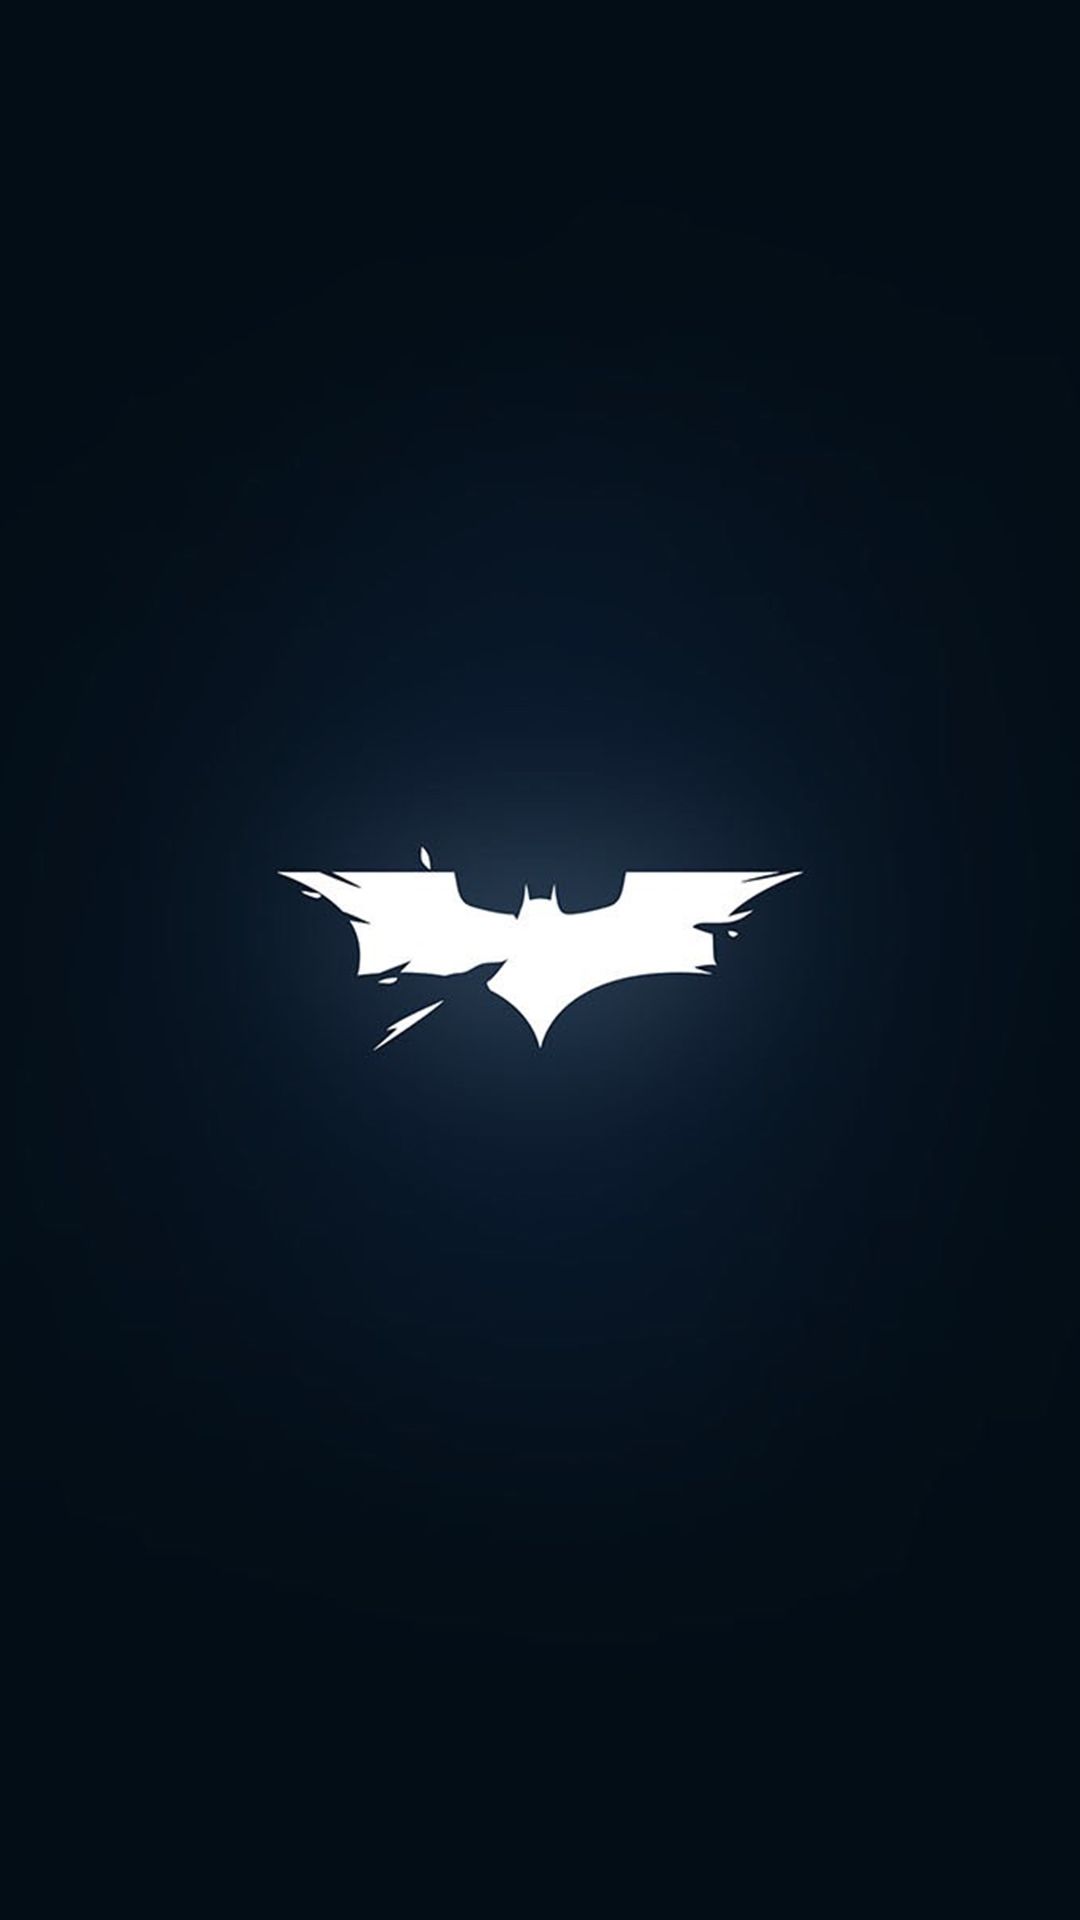 Batman wallpaper x on wallpaperbeast batman logo batman wallpaper batman ics